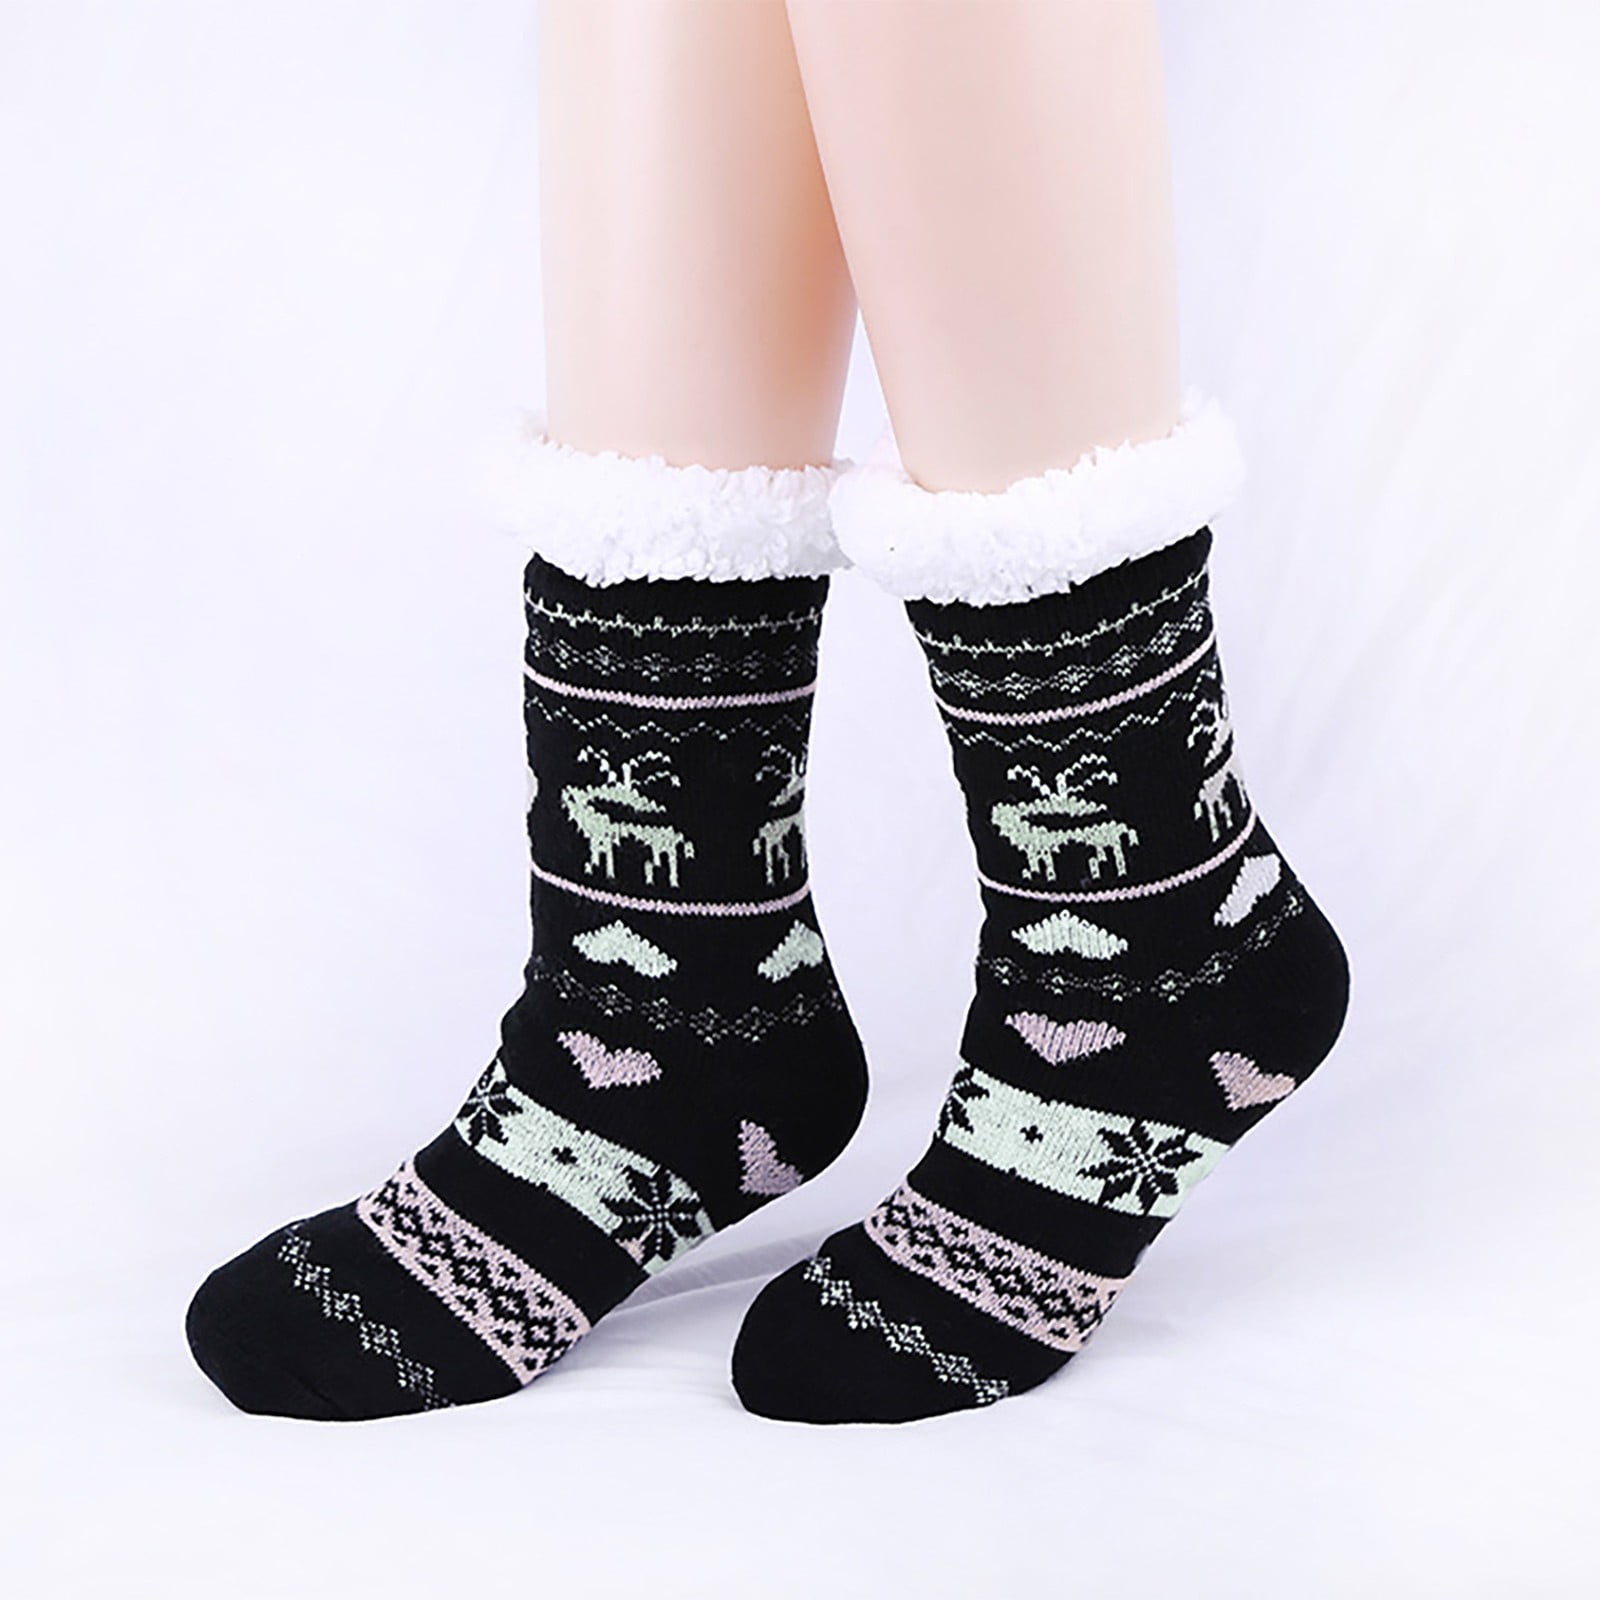 Lawor Socks For Men&Women Extra-Warm Indoor Socks Women Bed Socks